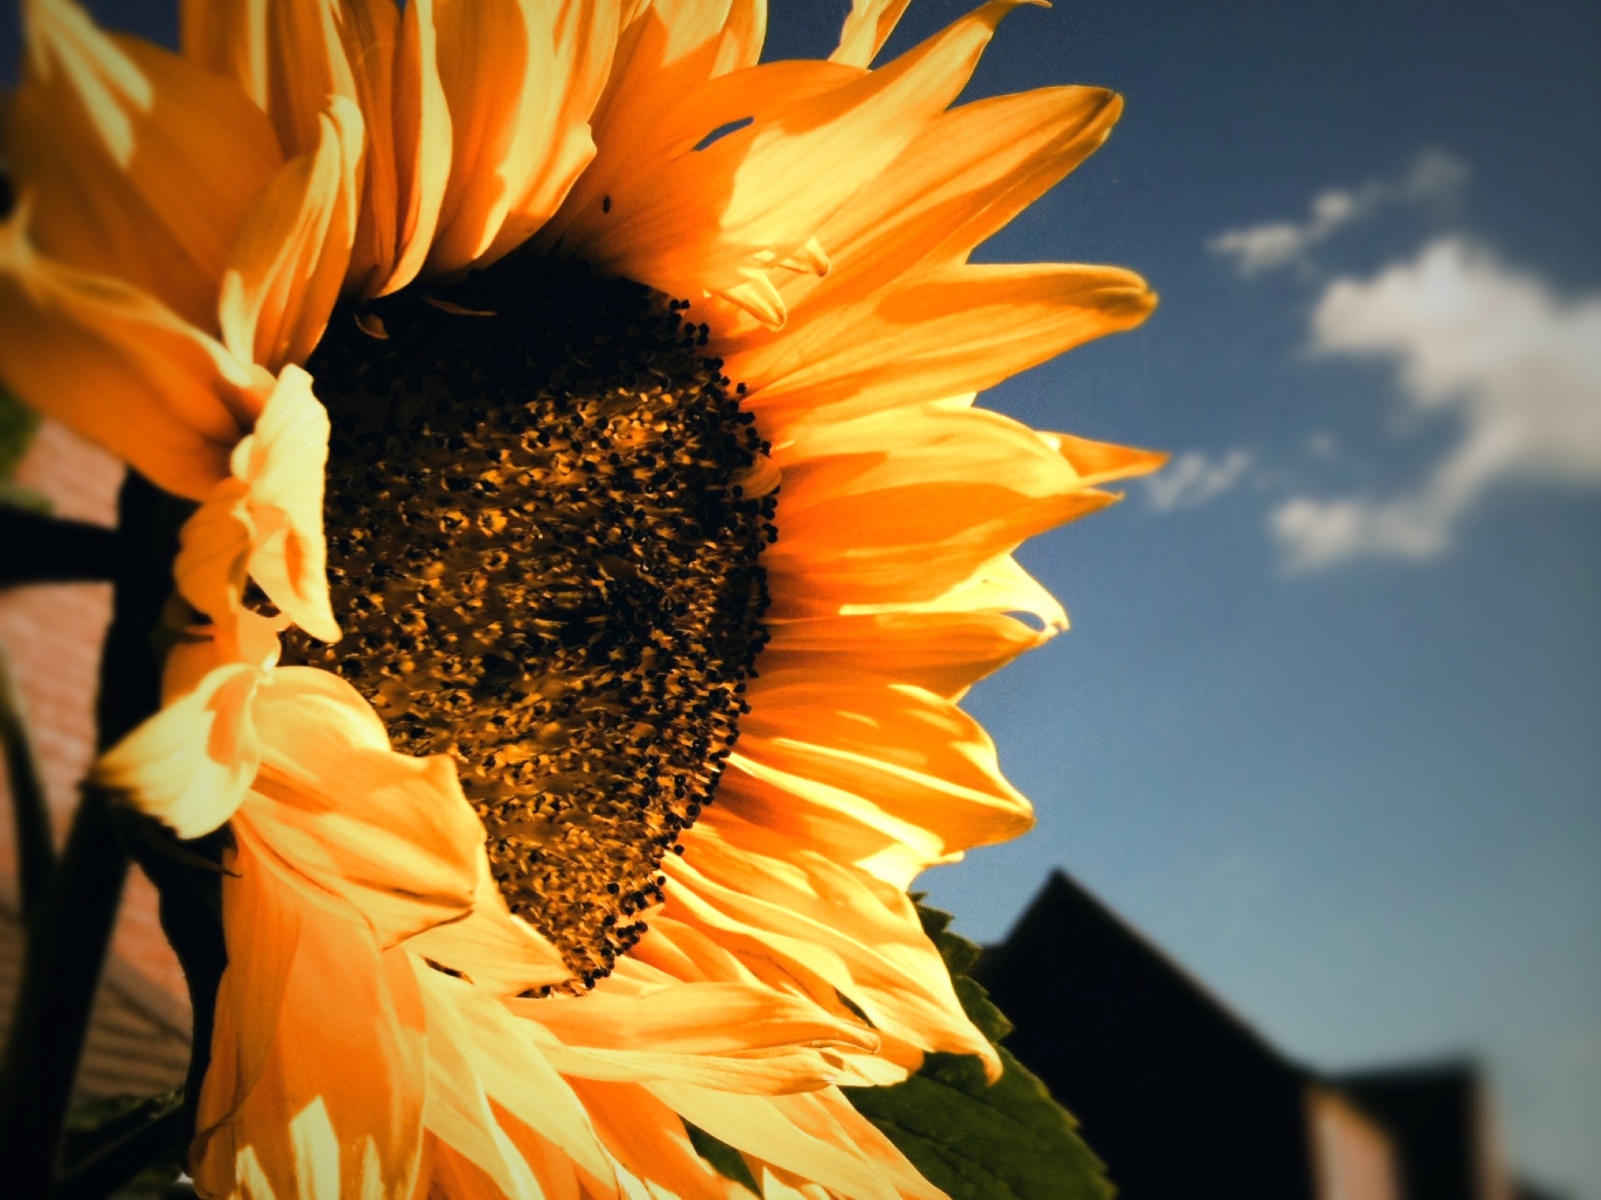 Day 45 – Sunflower’s farewell